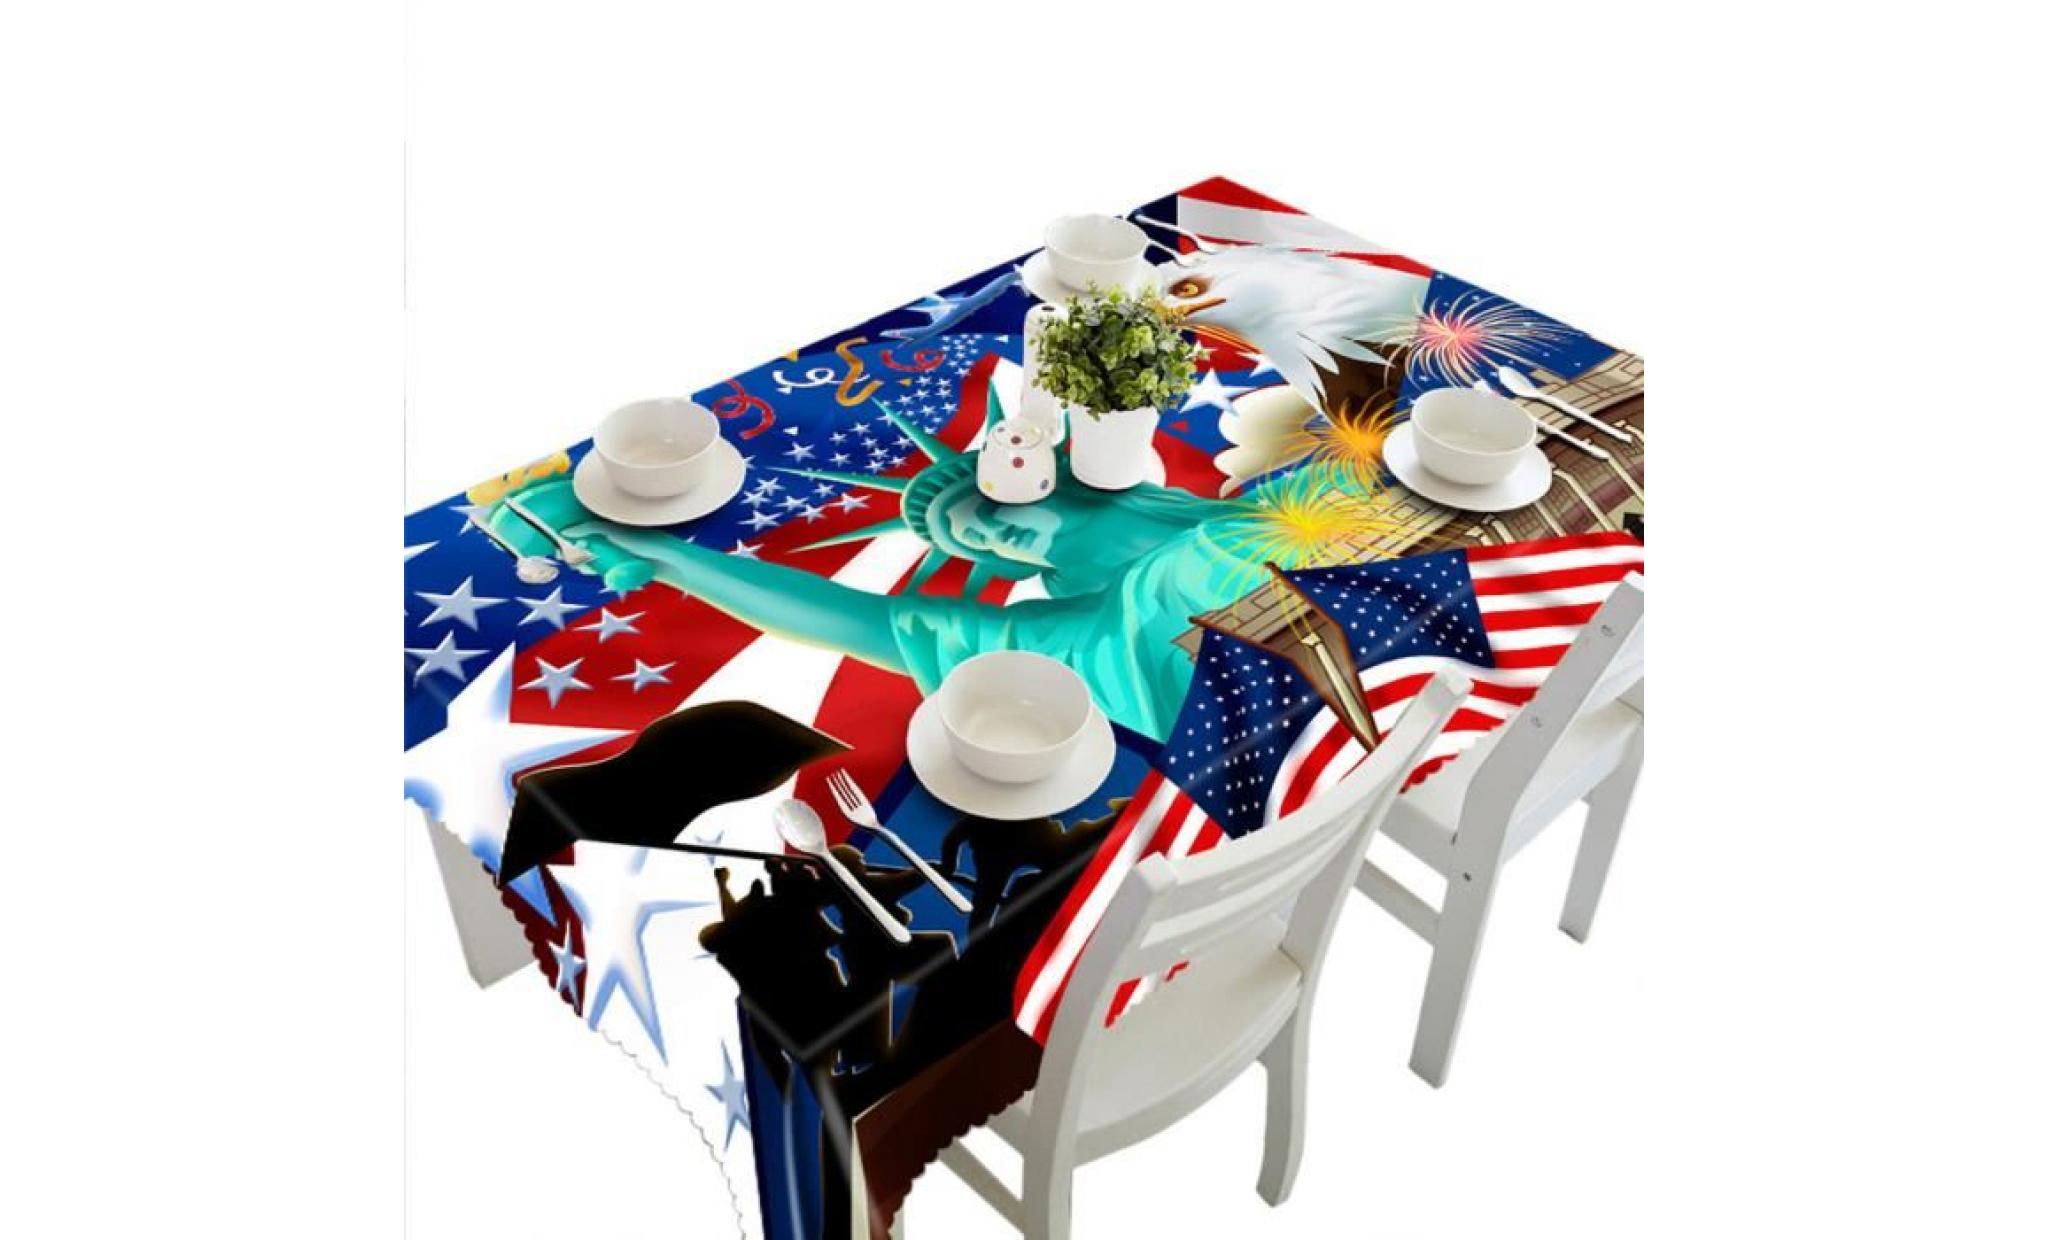 3d multi table à manger fonctionnelle tissu pour picnic party b nappe@huaido122